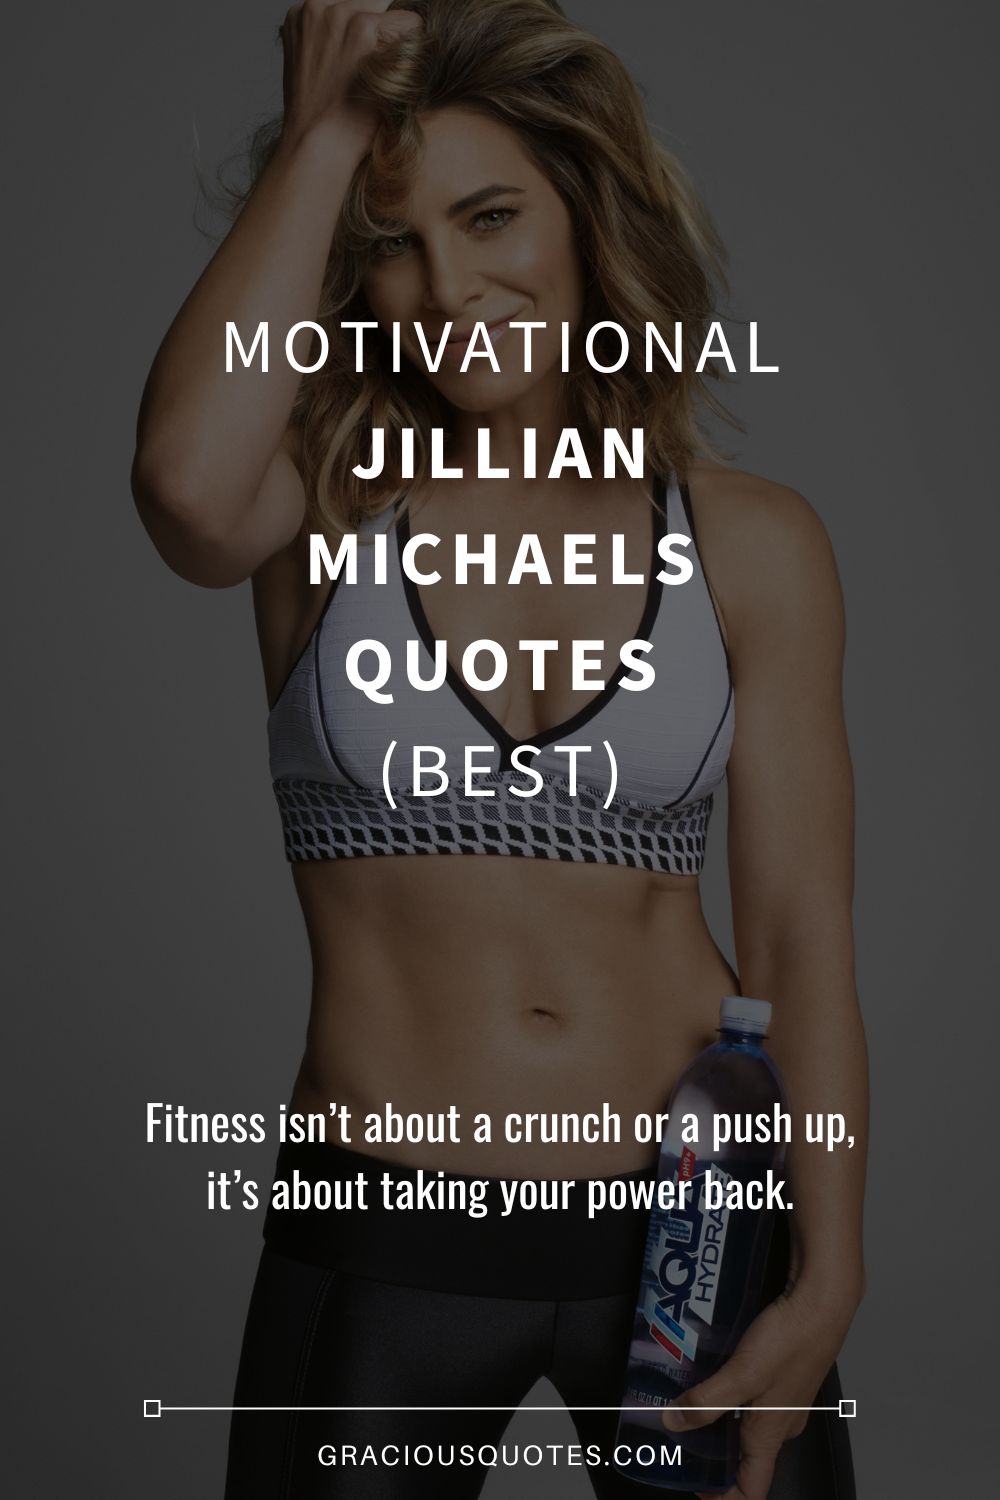 Motivational Jillian Michaels Quotes (BEST) - Gracious Quotes